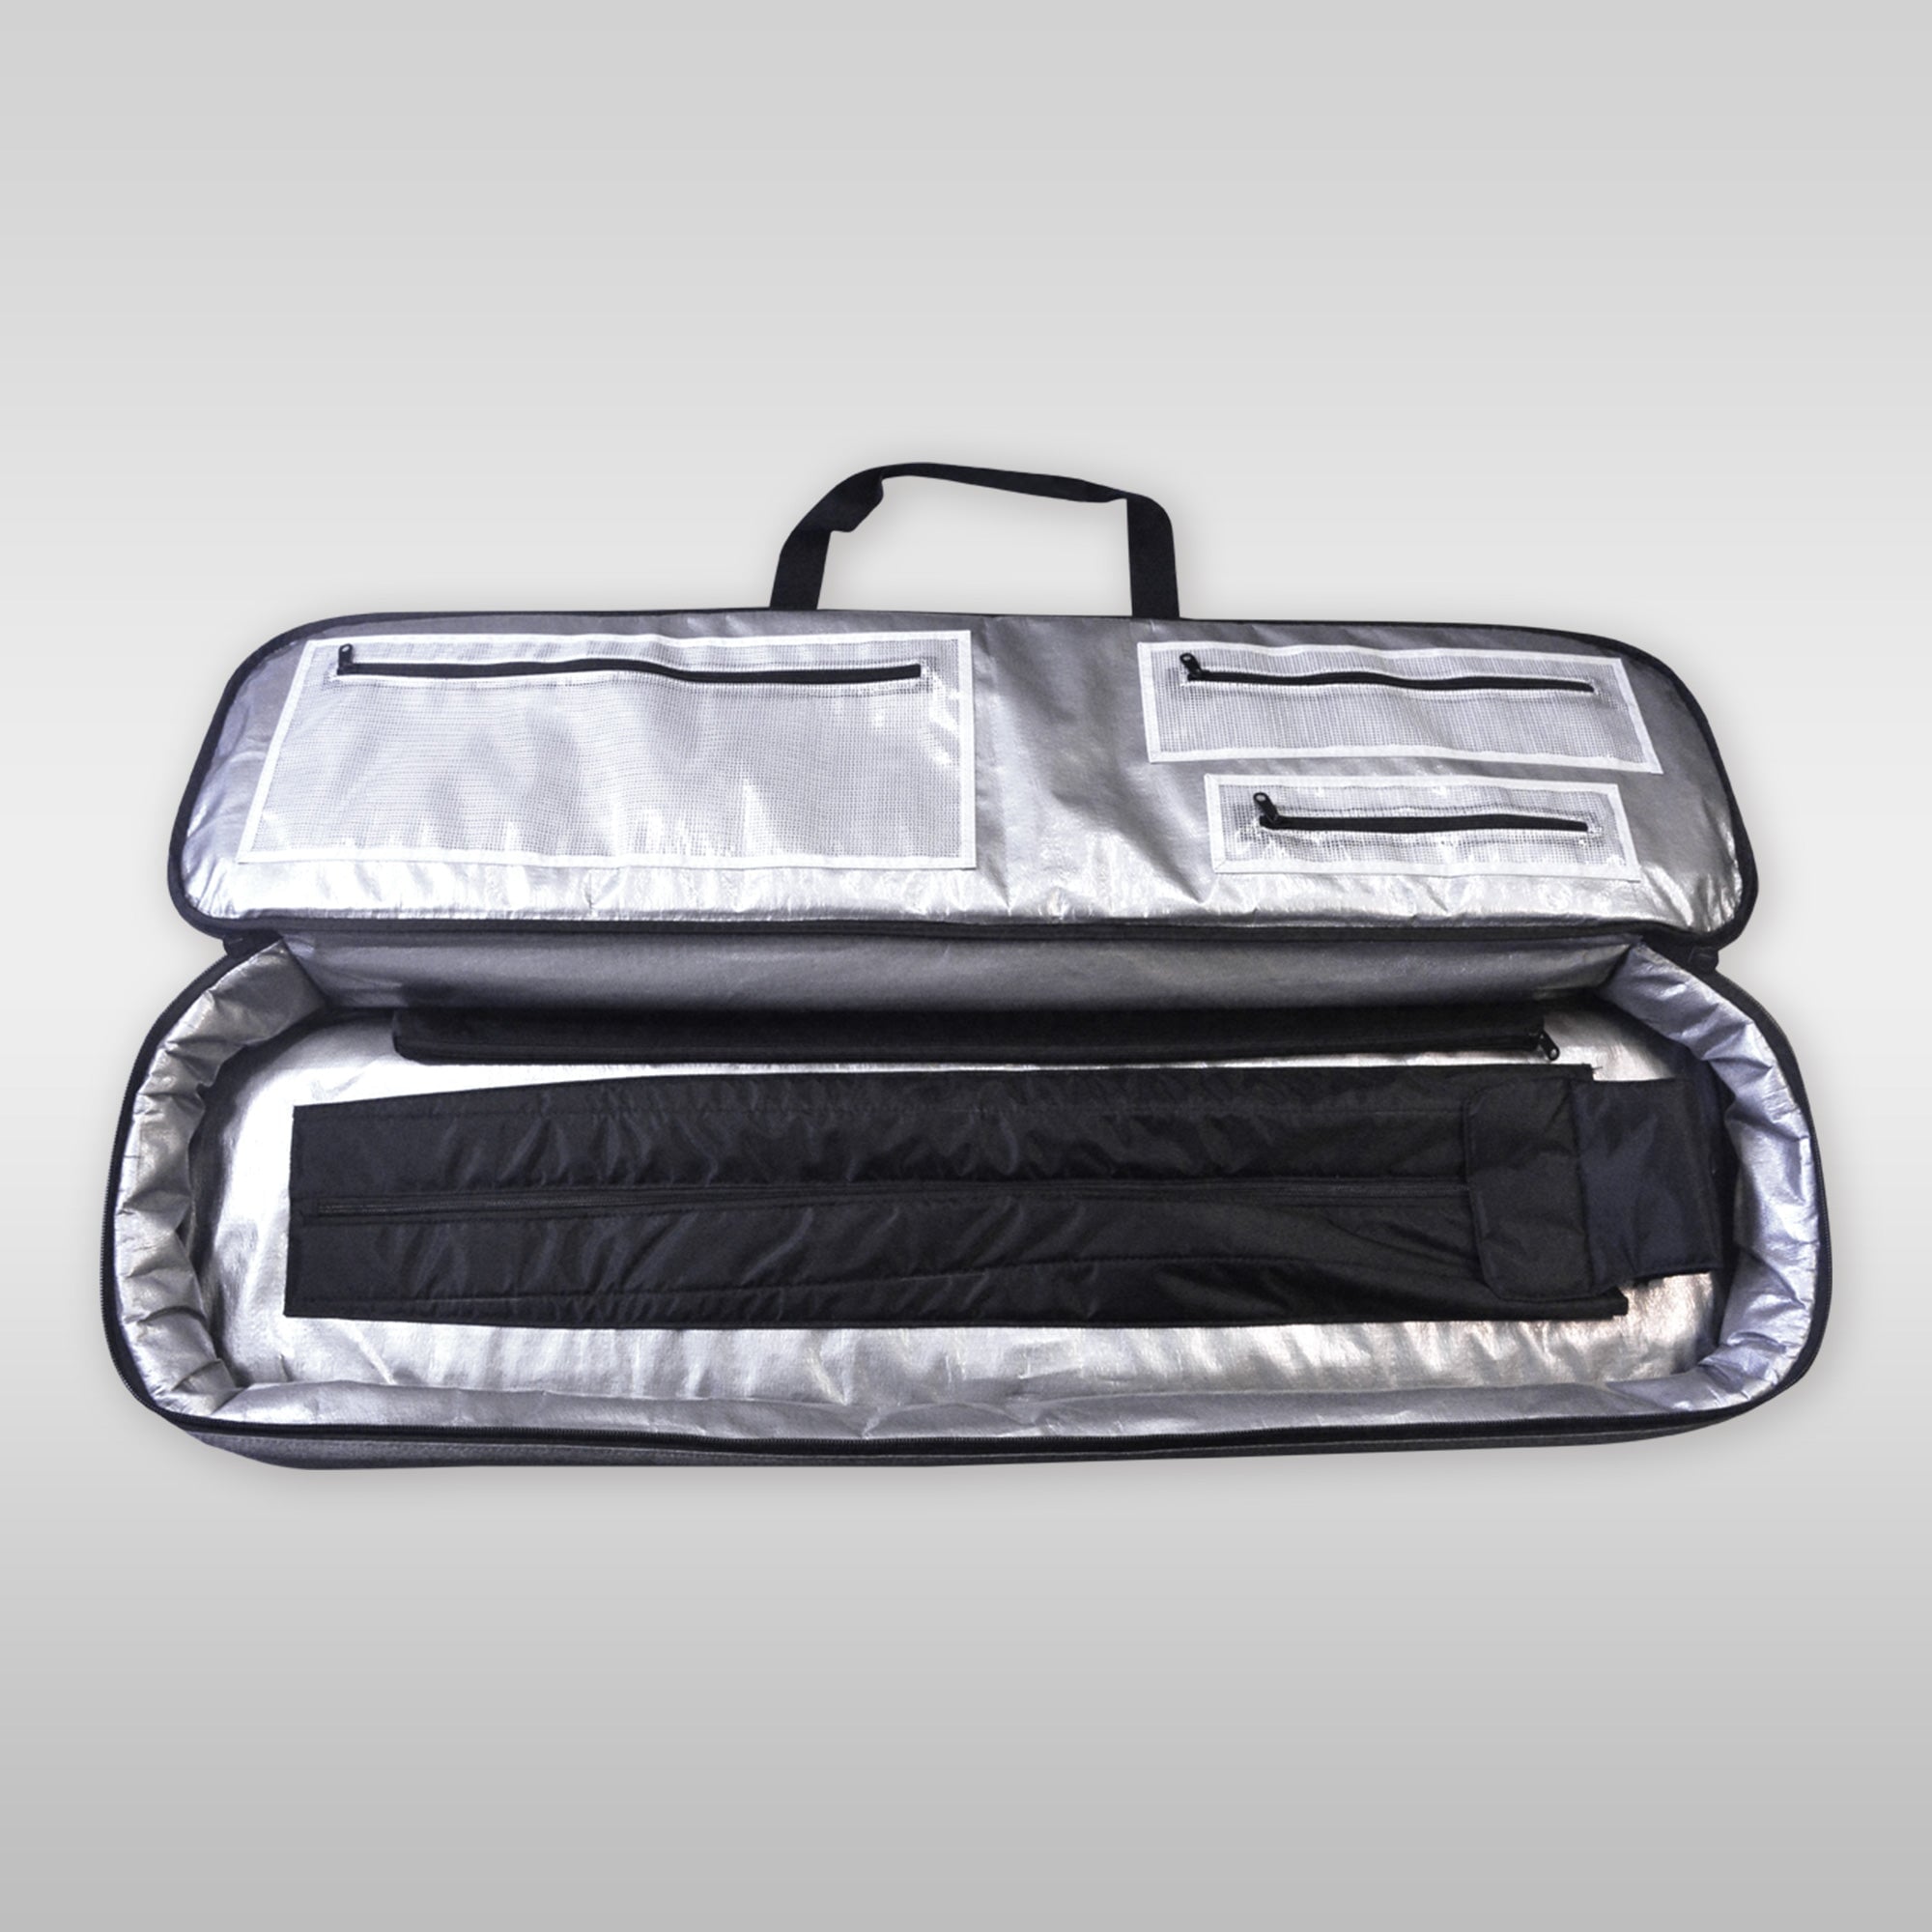 SideOn Sie-On Wingfoil Foil Tasche Bag